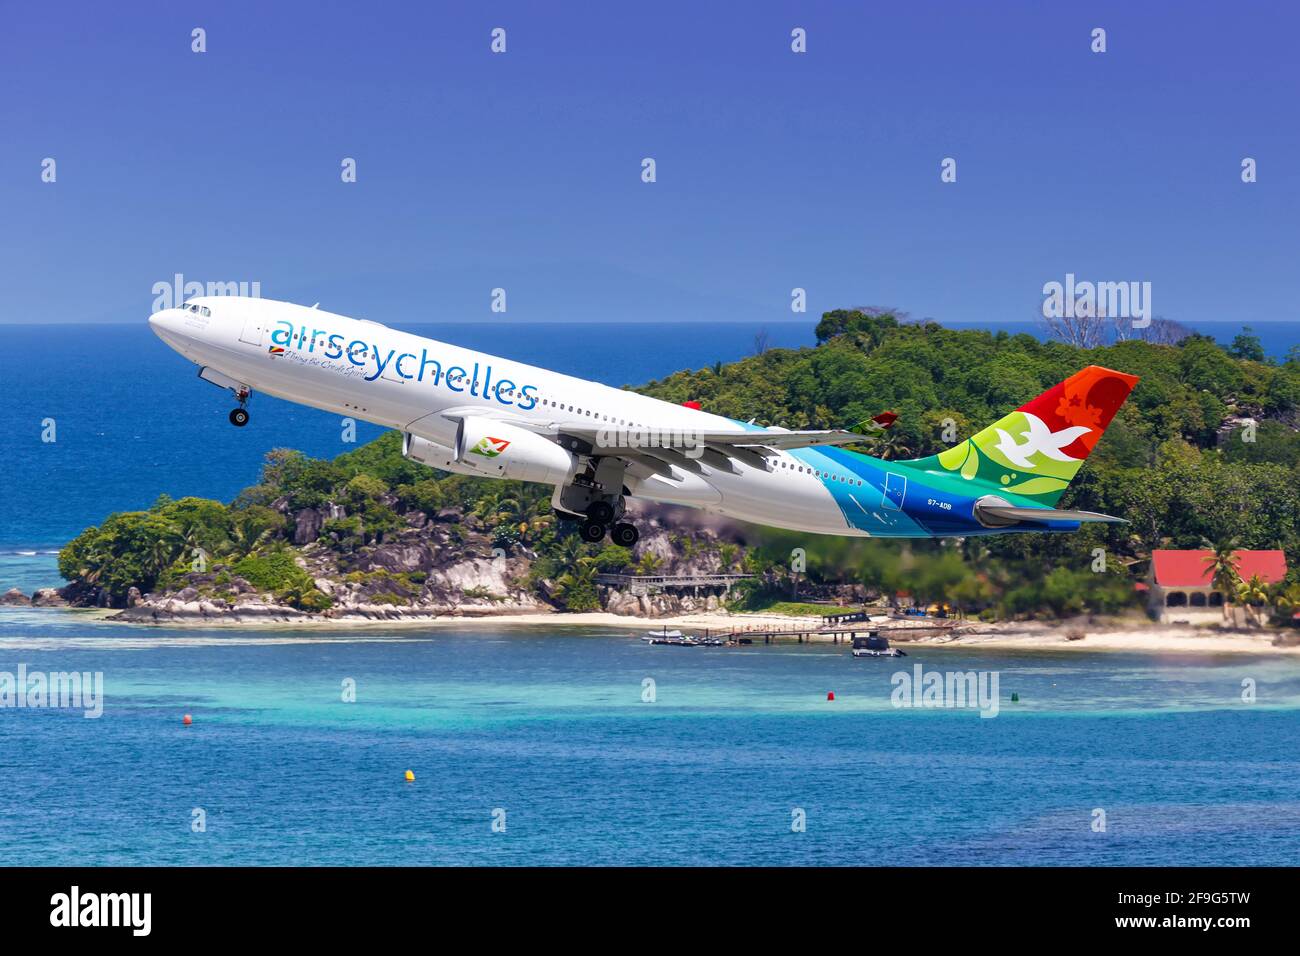 Mahé, Seychelles - 24 novembre 2017 : avion Airbus A330 d'Air Seychelles à l'aéroport international des Seychelles (SEZ) aux Seychelles. Airbus est une UE Banque D'Images